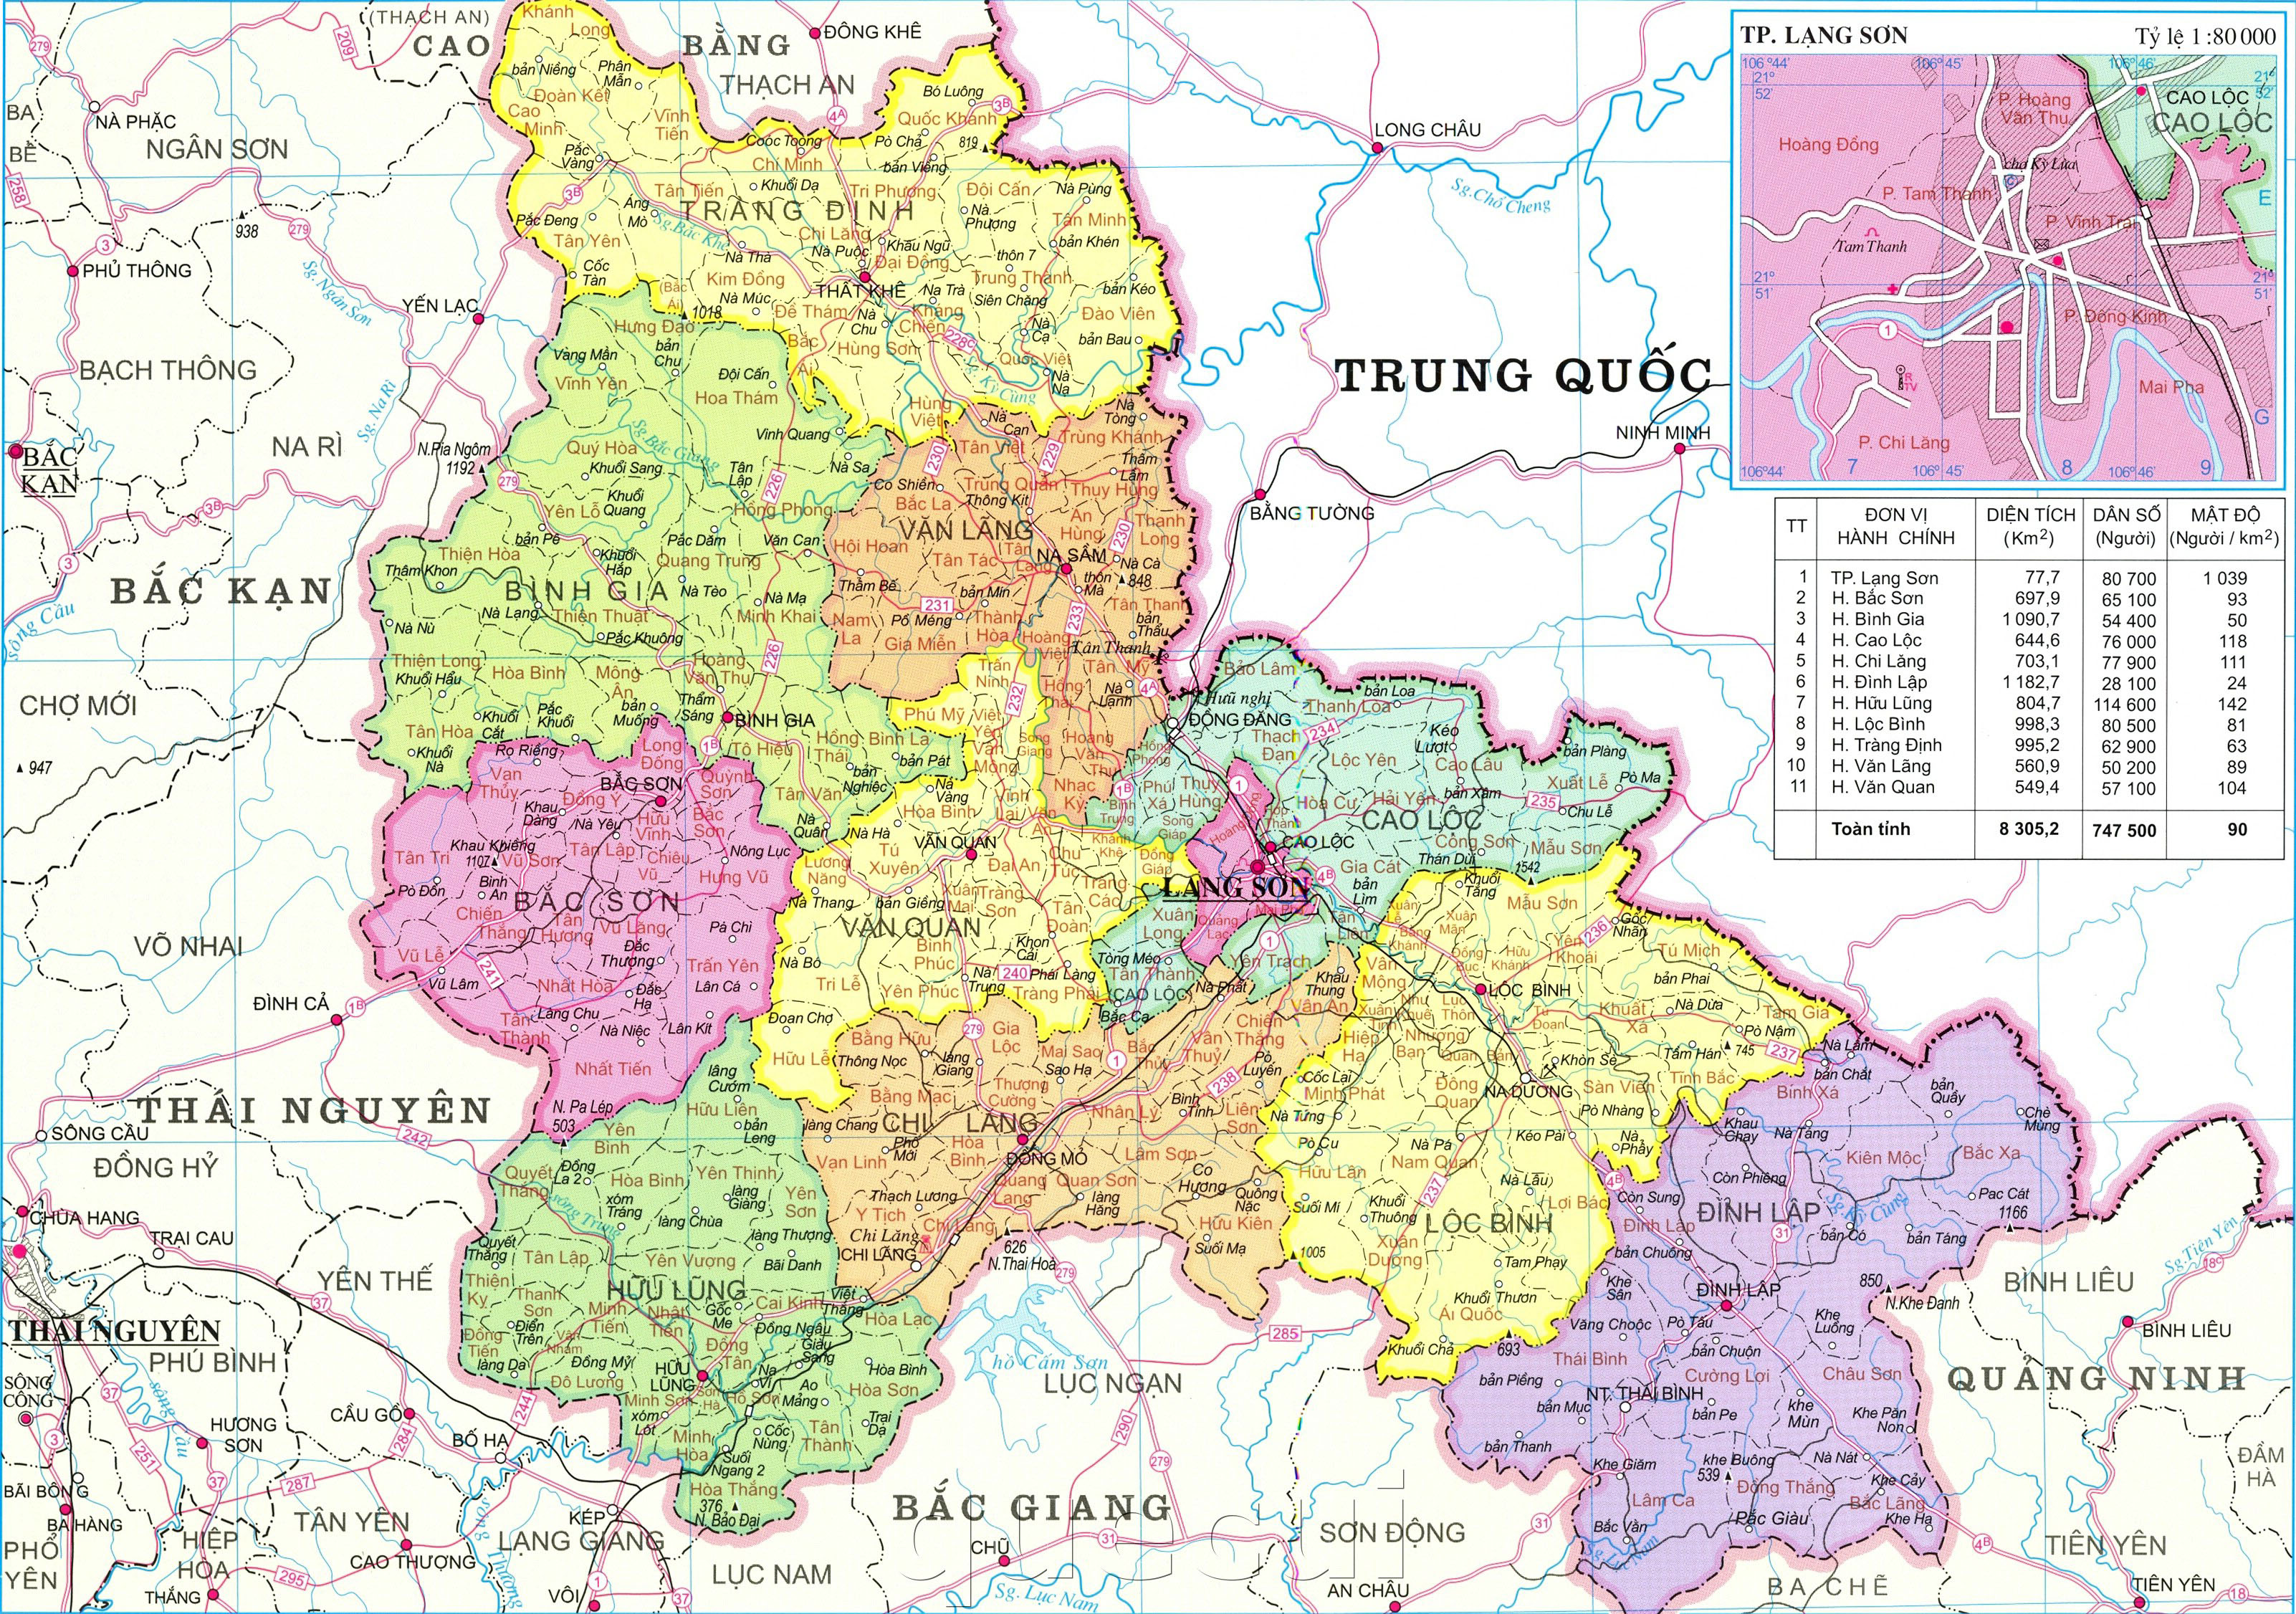 Bản đồ Hành chính tỉnh Lạng Sơn - Với bản đồ hành chính tỉnh Lạng Sơn, quý khách sẽ có cái nhìn rõ ràng hơn về sơ đồ hành chính, địa giới hành chính, những đất điểm nổi bật của tỉnh này. Đọc thêm để khám phá hình ảnh liên quan.